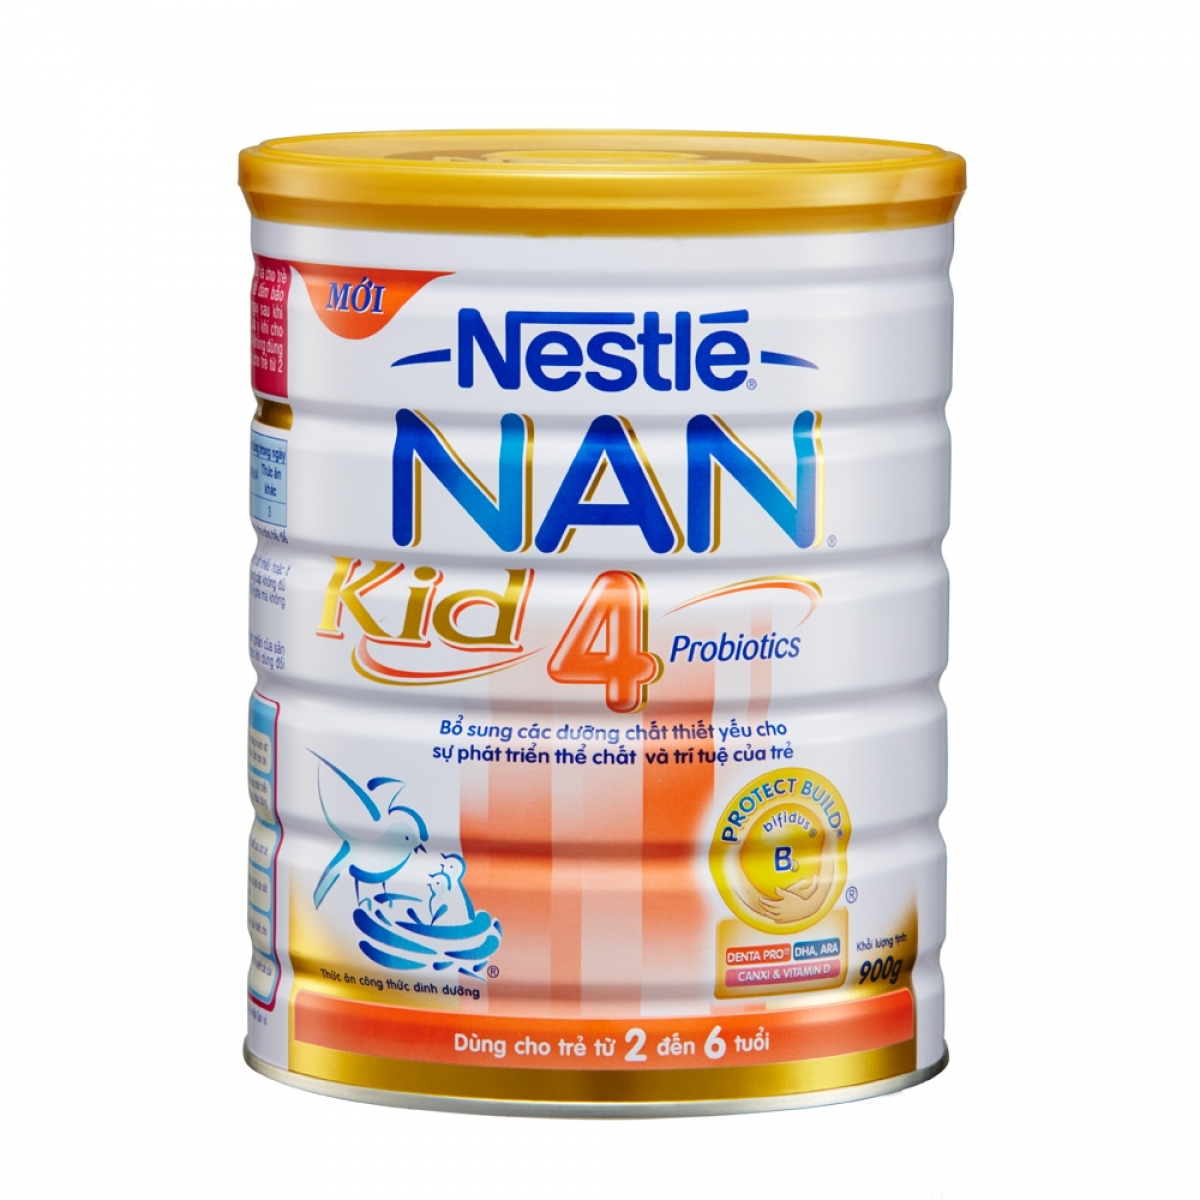 Sữa Nestlé NAN Kid 4 là một giải pháp hợp lý để tăng cường hệ miễn dịch cho trẻ từ 2-6 tuổi.